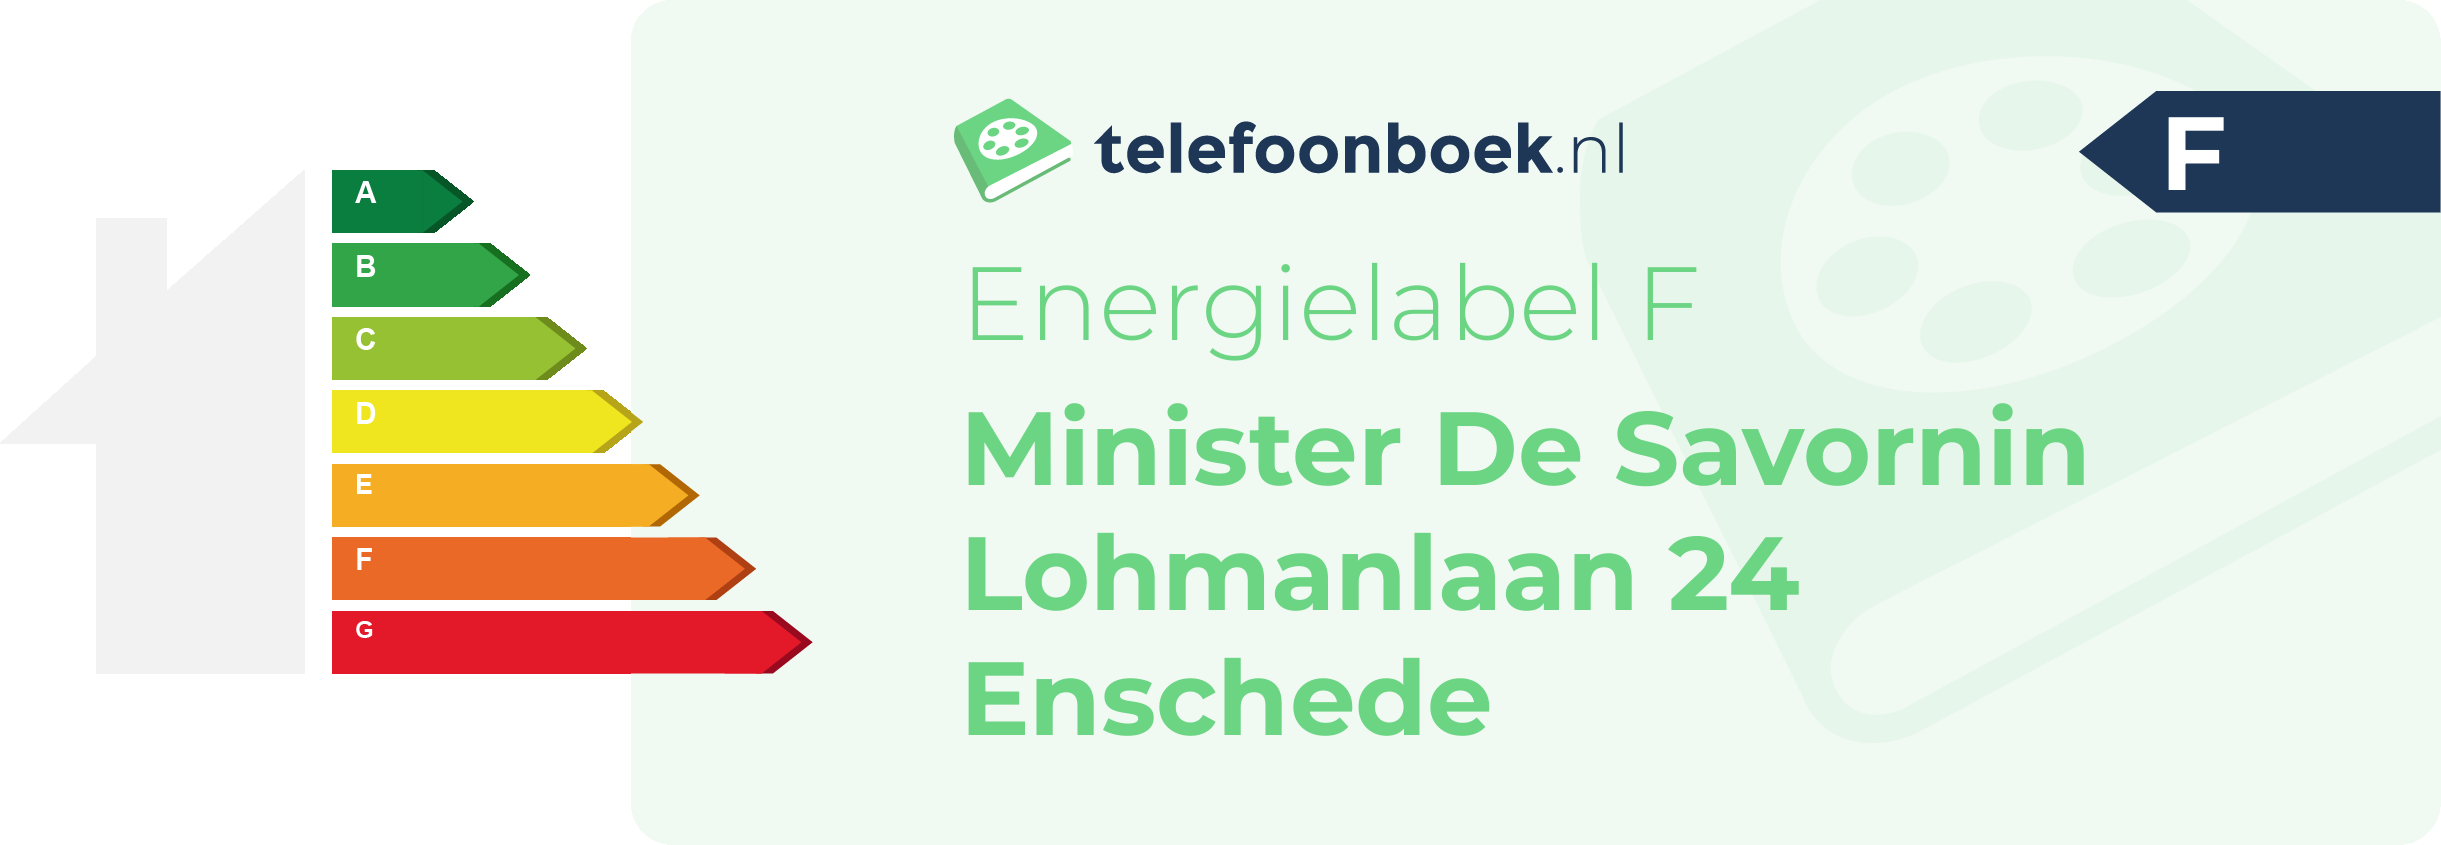 Energielabel Minister De Savornin Lohmanlaan 24 Enschede